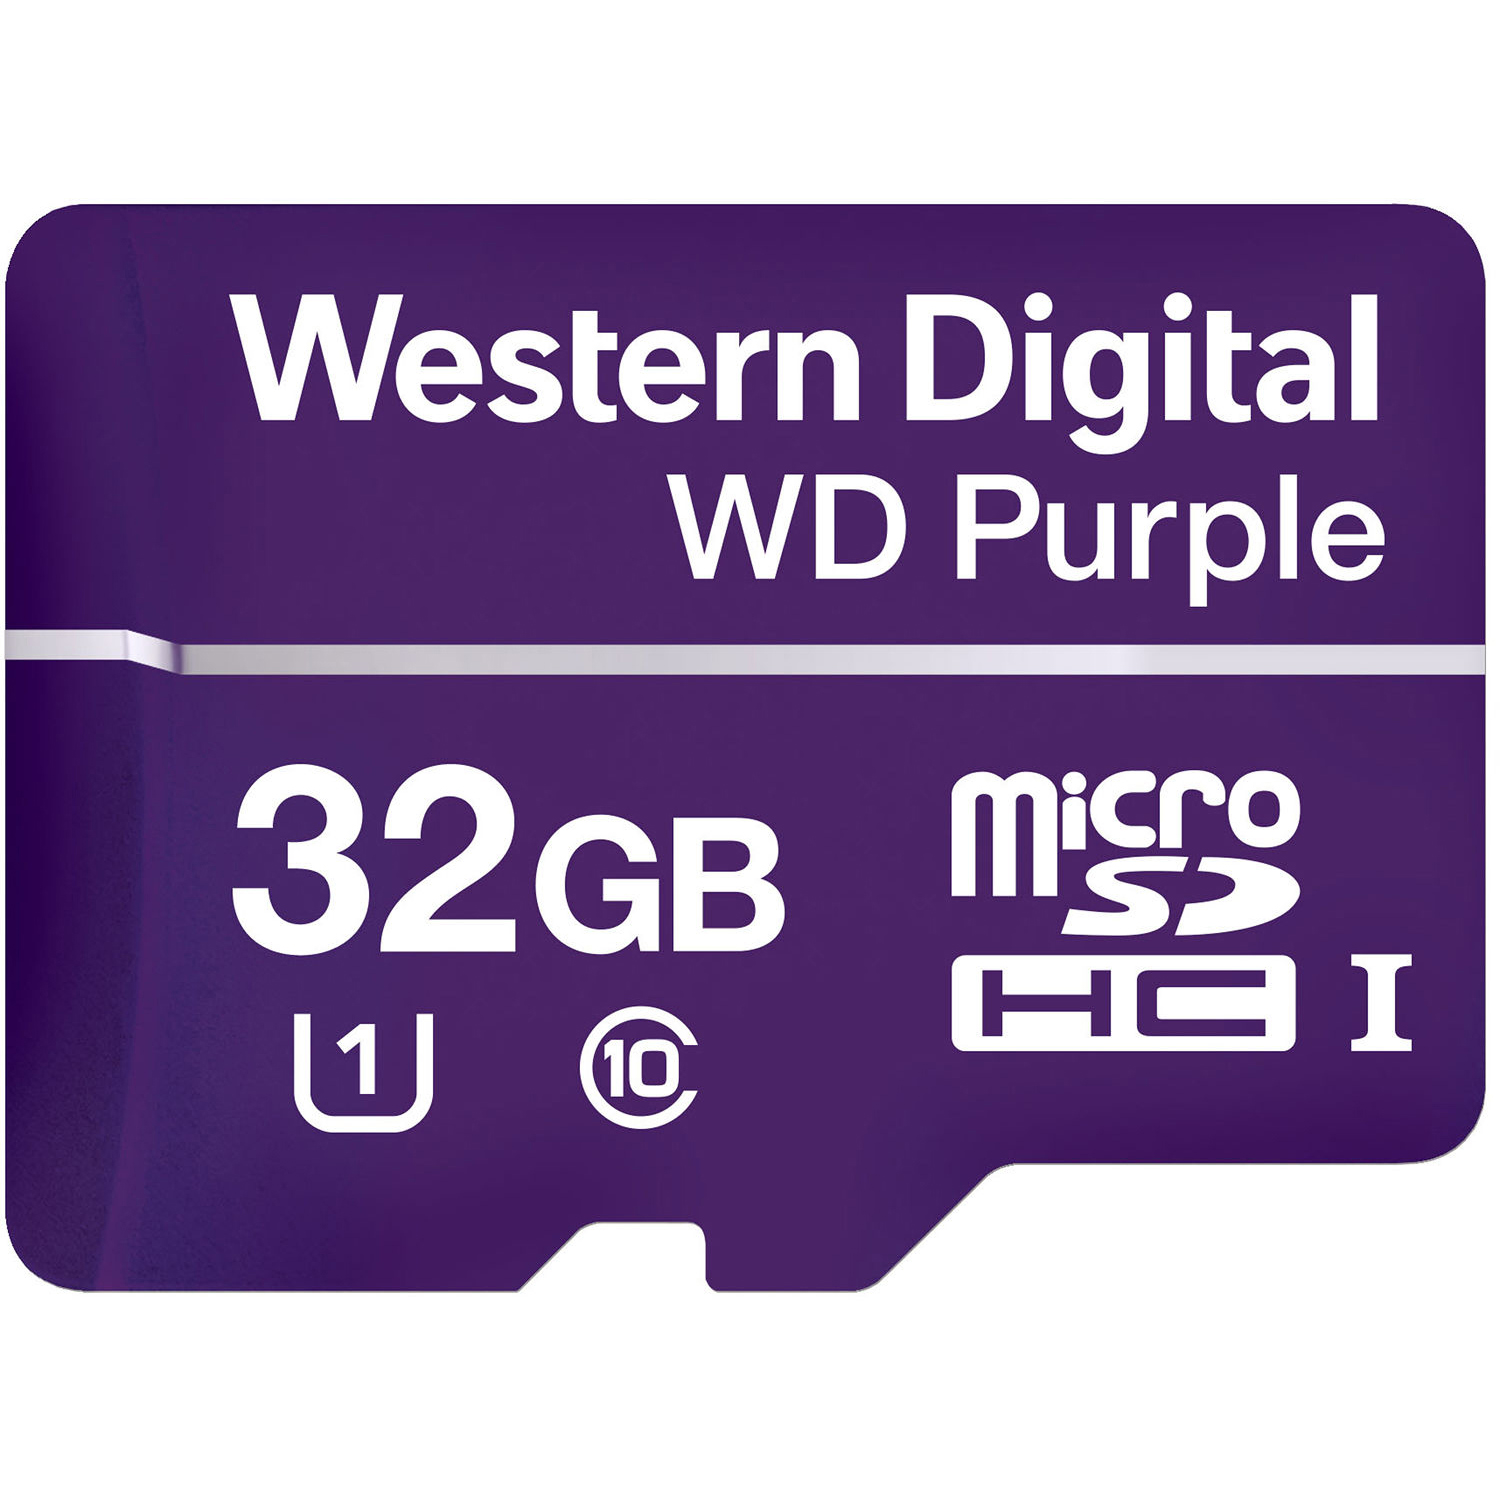 Original Western Digital Purple 32GB MicroSDHC Memory Card (WDD032G1P0A)